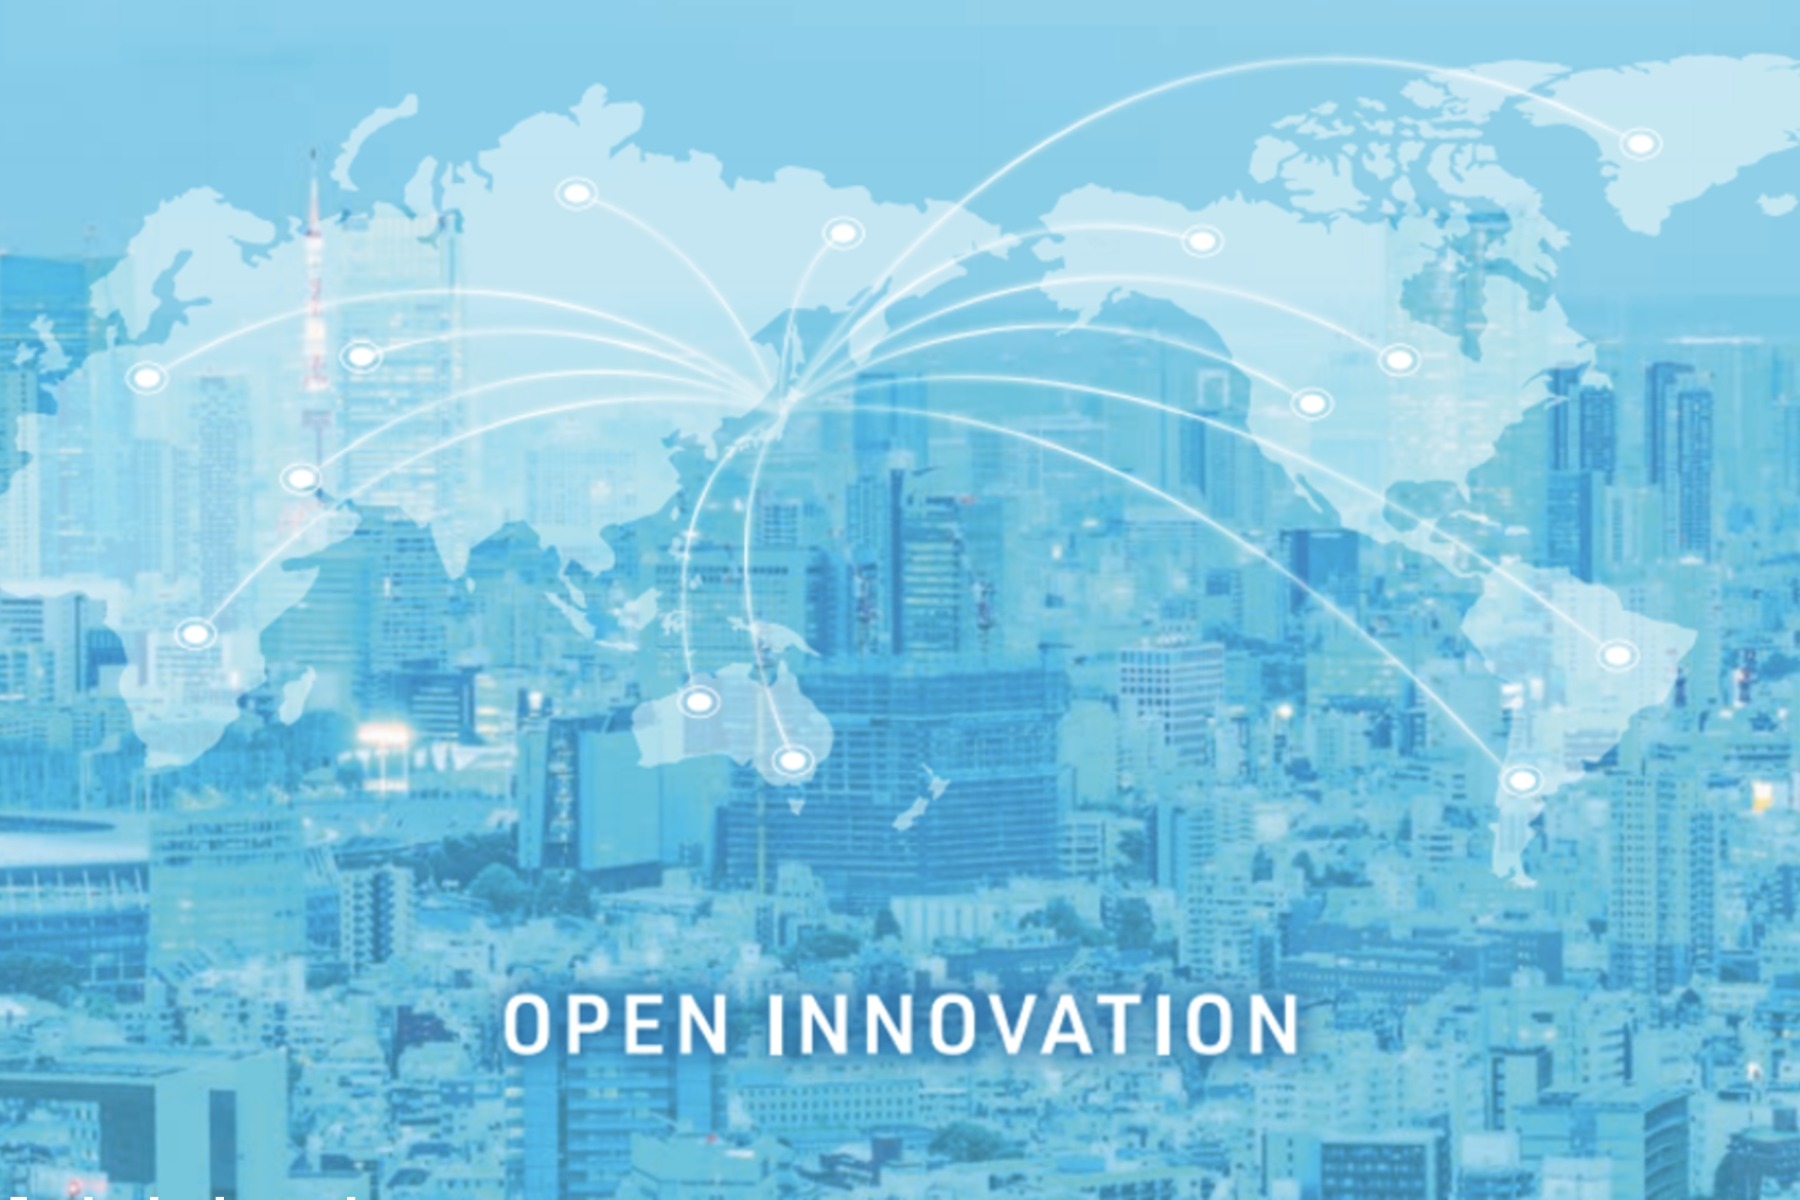 イノベーション創出のため「何をすべきか」がわかる──「オープンイノベーション白書 第三版」公開